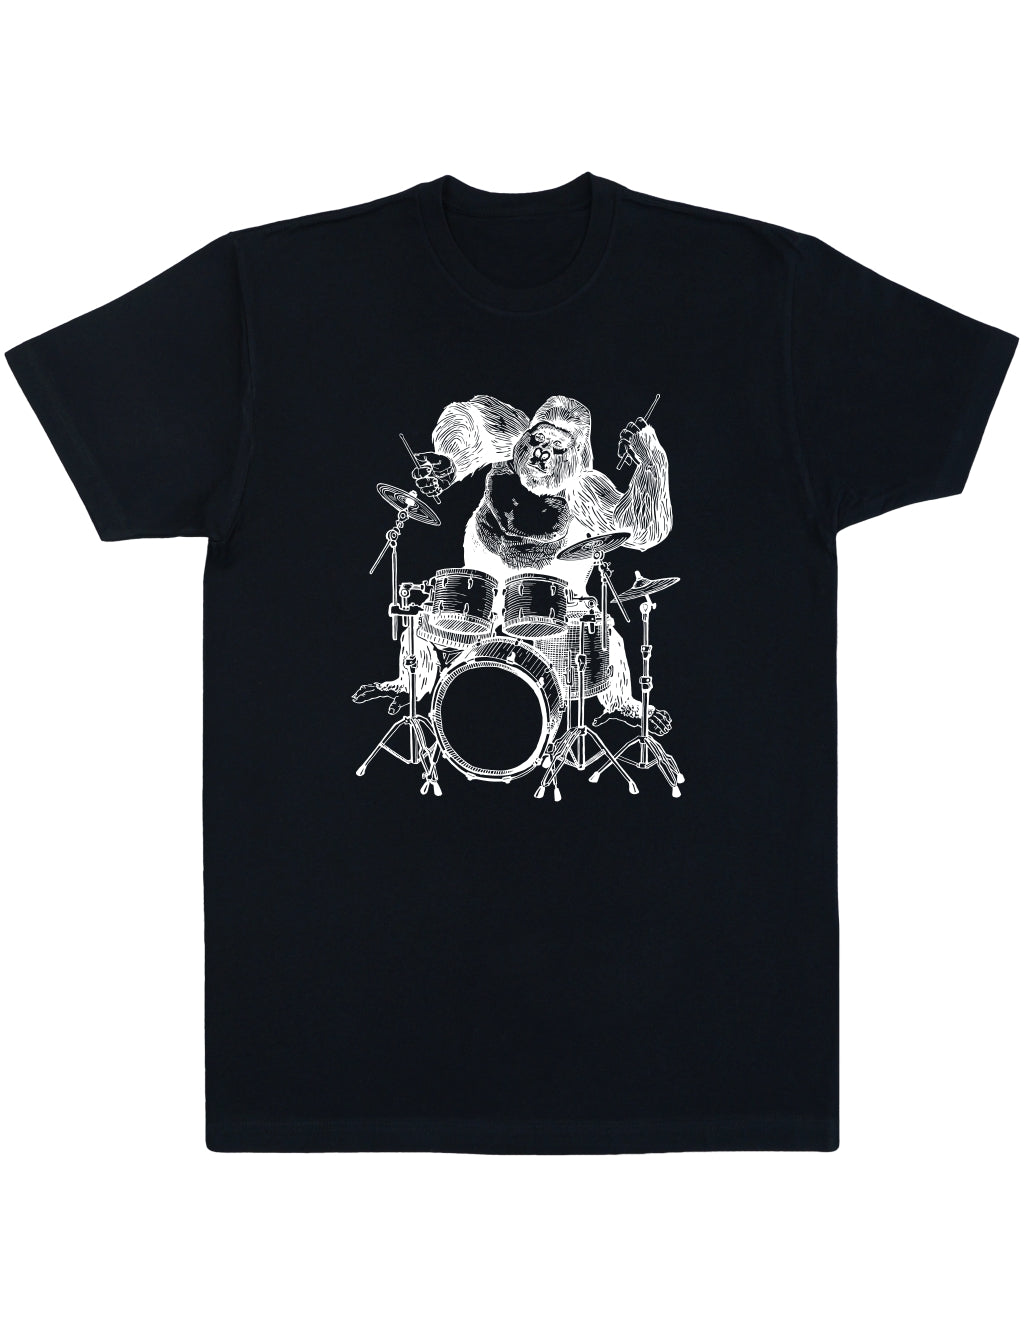 seembo-gorilla-playing-drums-men-black-t-shirt